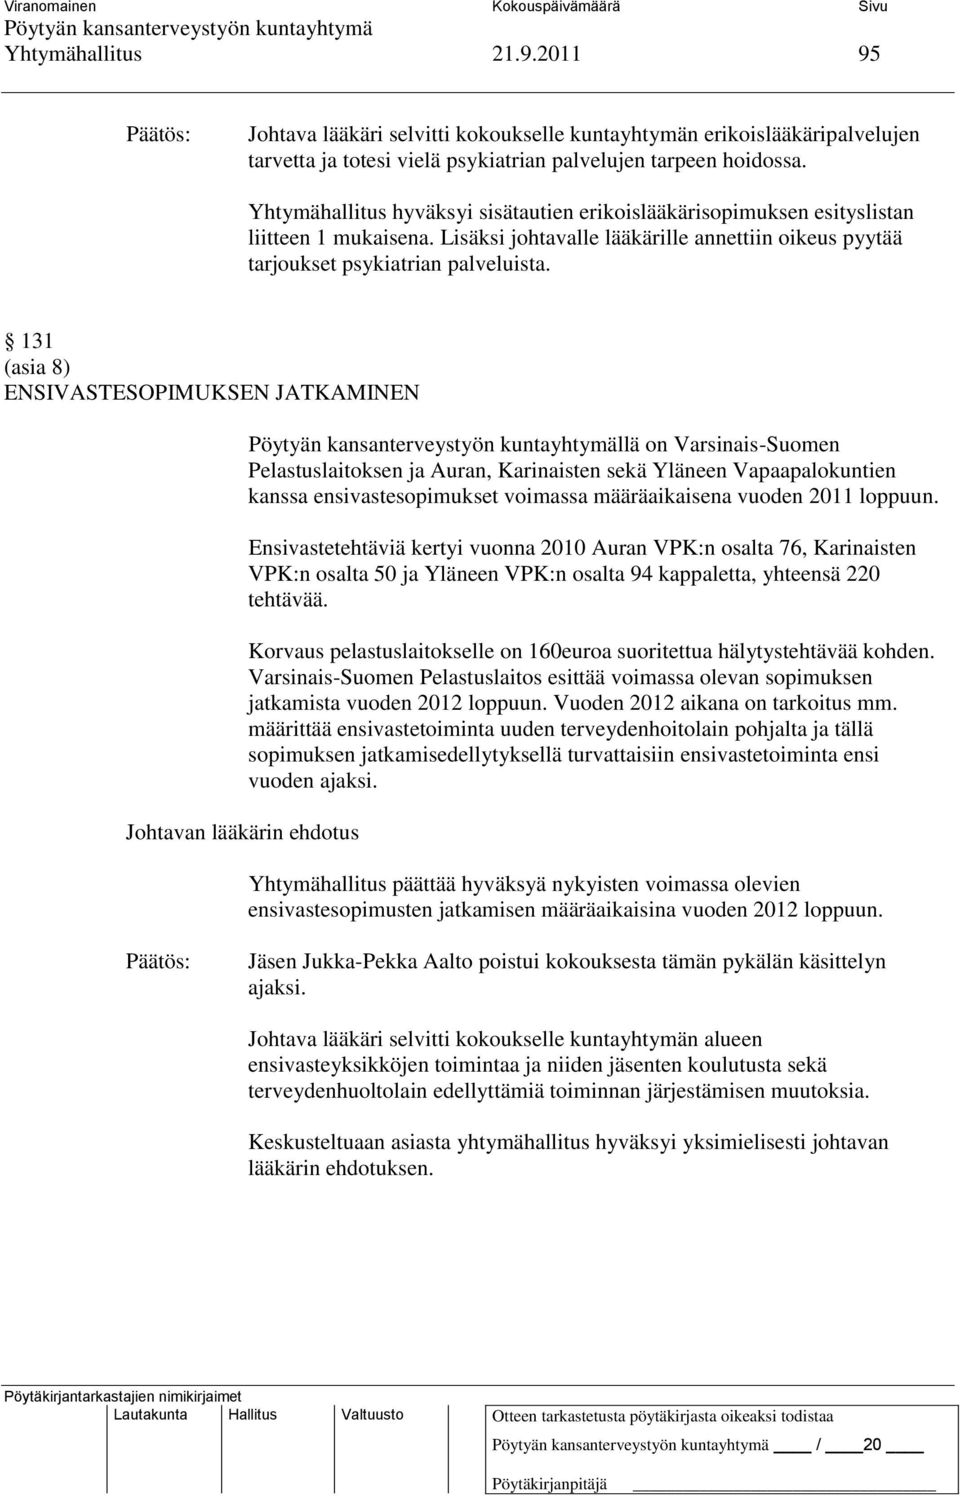 131 (asia 8) ENSIVASTESOPIMUKSEN JATKAMINEN Johtavan lääkärin ehdotus llä on Varsinais-Suomen Pelastuslaitoksen ja Auran, Karinaisten sekä Yläneen Vapaapalokuntien kanssa ensivastesopimukset voimassa